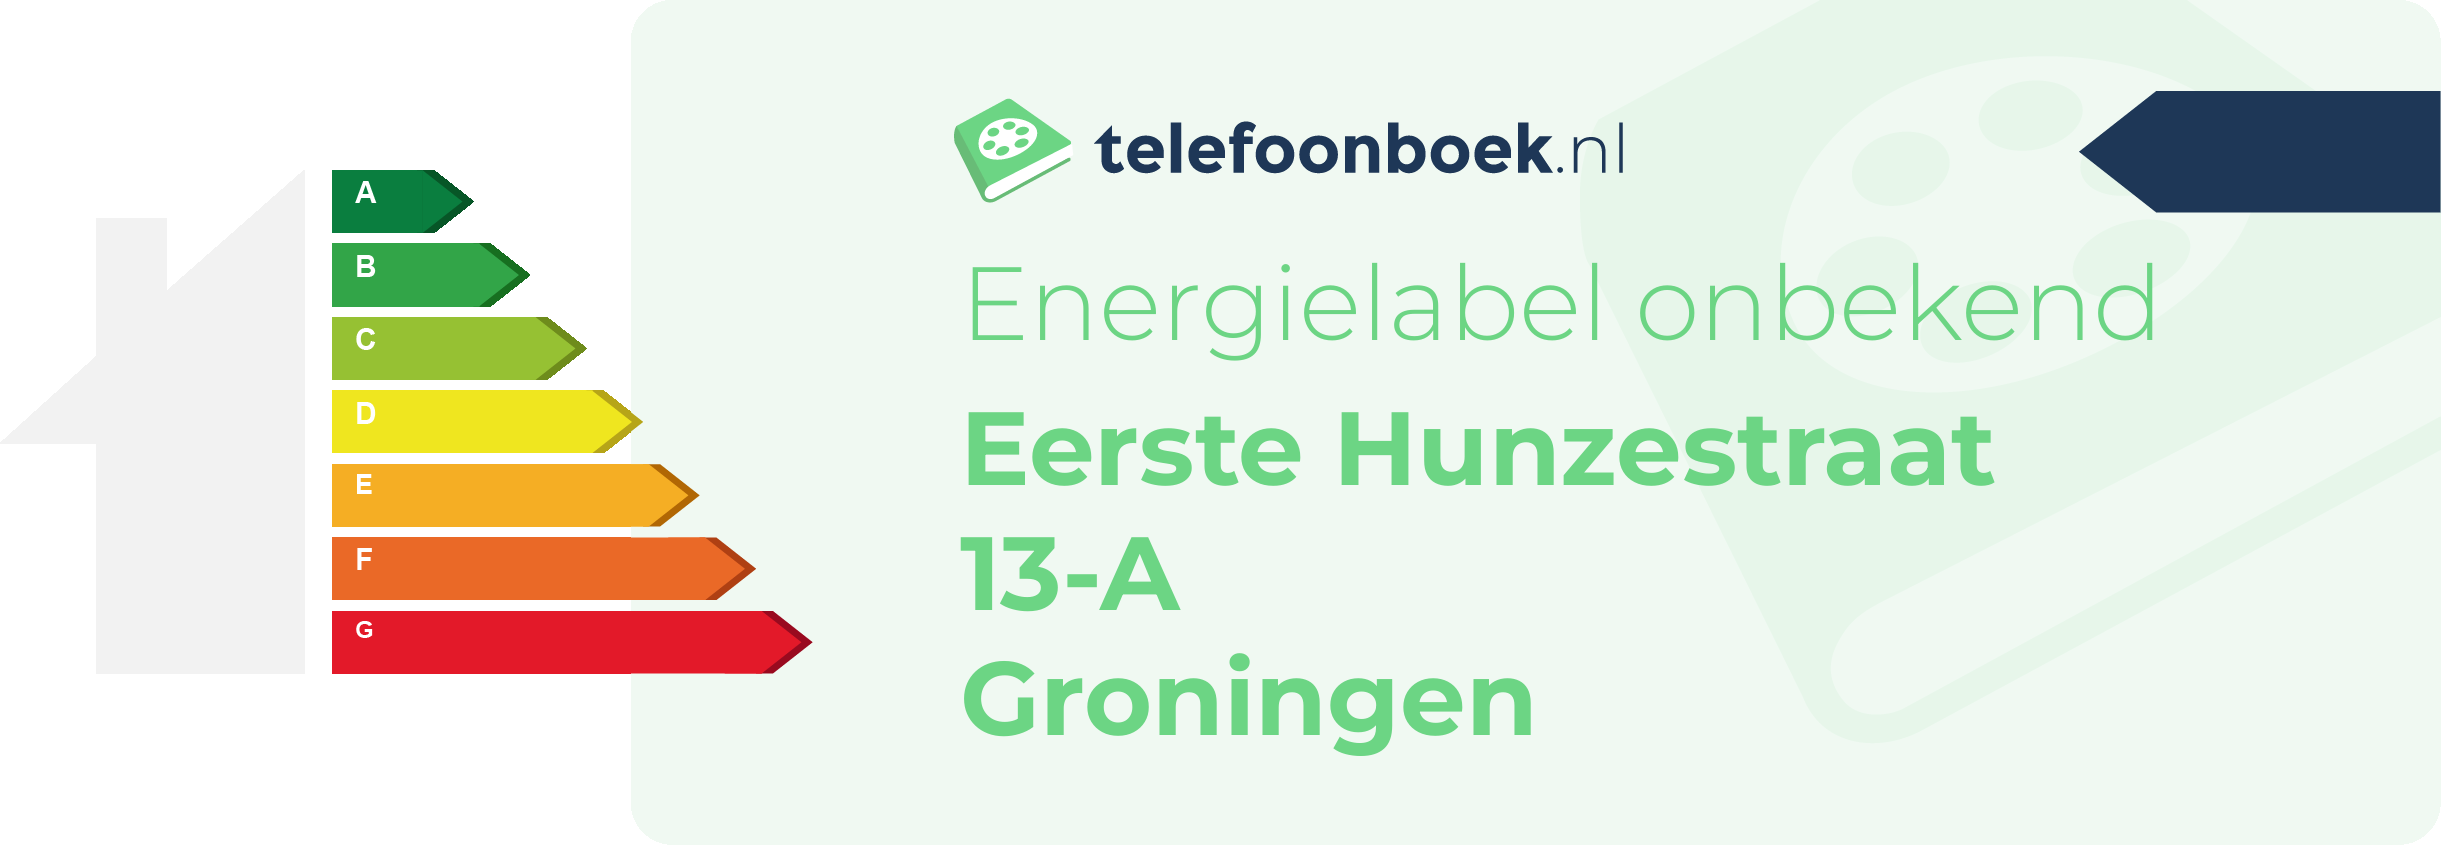 Energielabel Eerste Hunzestraat 13-A Groningen